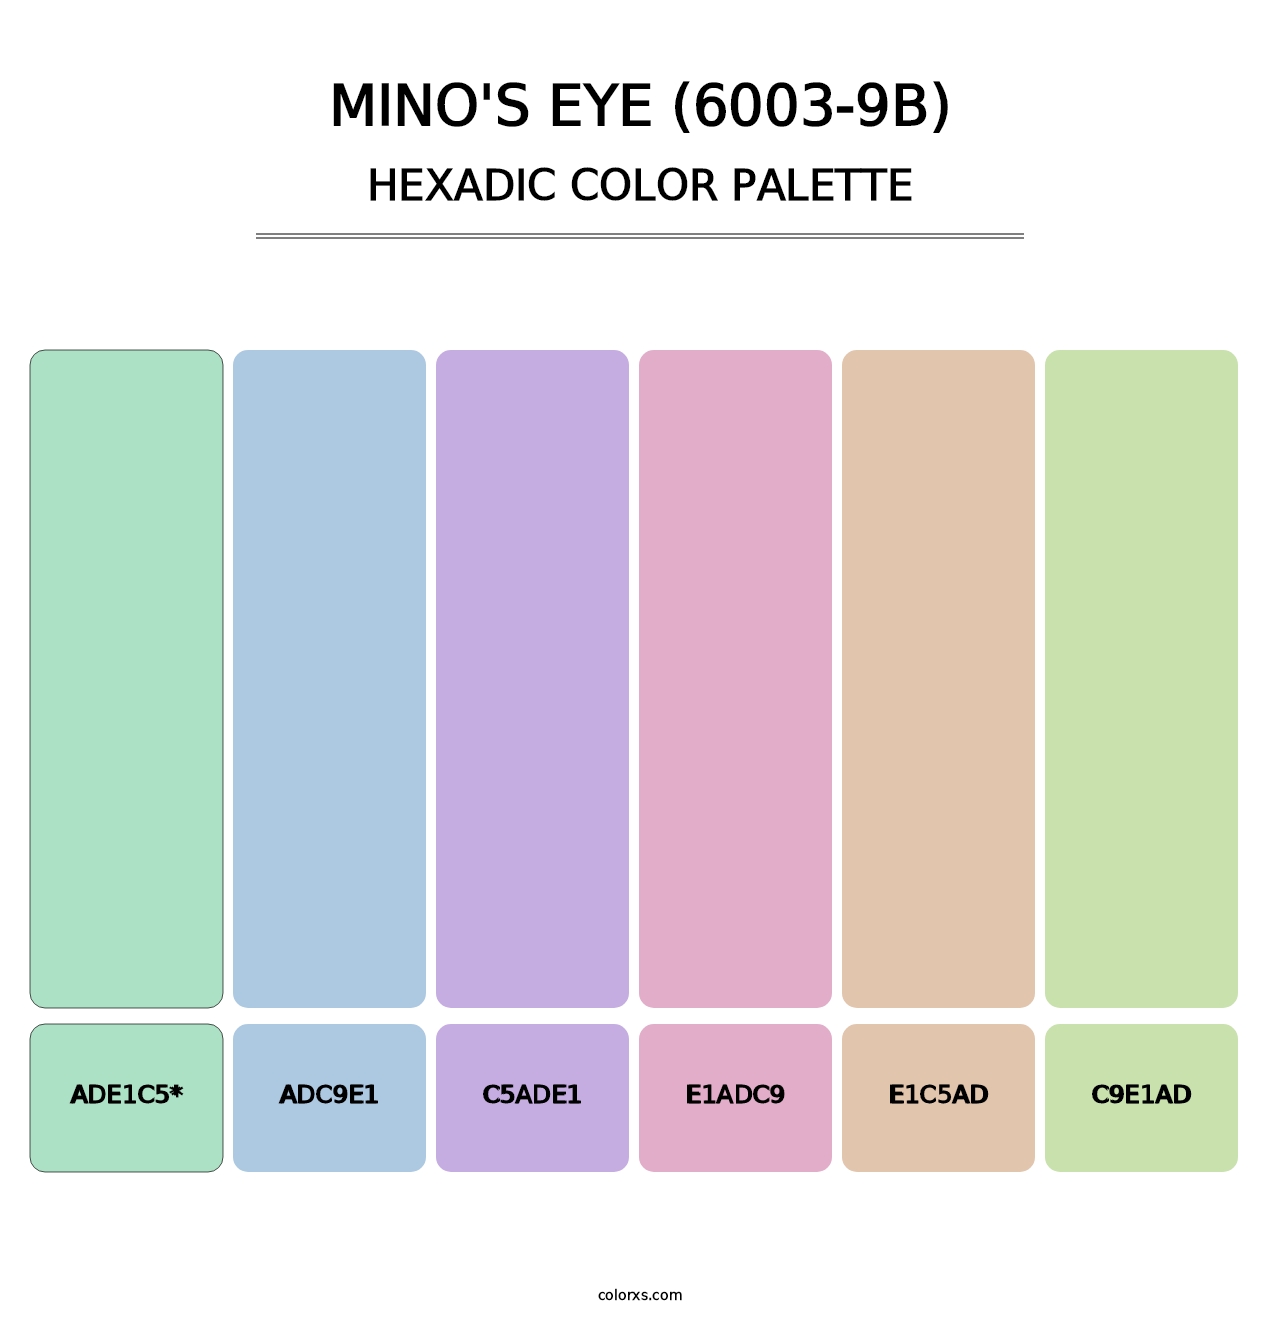 Mino's Eye (6003-9B) - Hexadic Color Palette